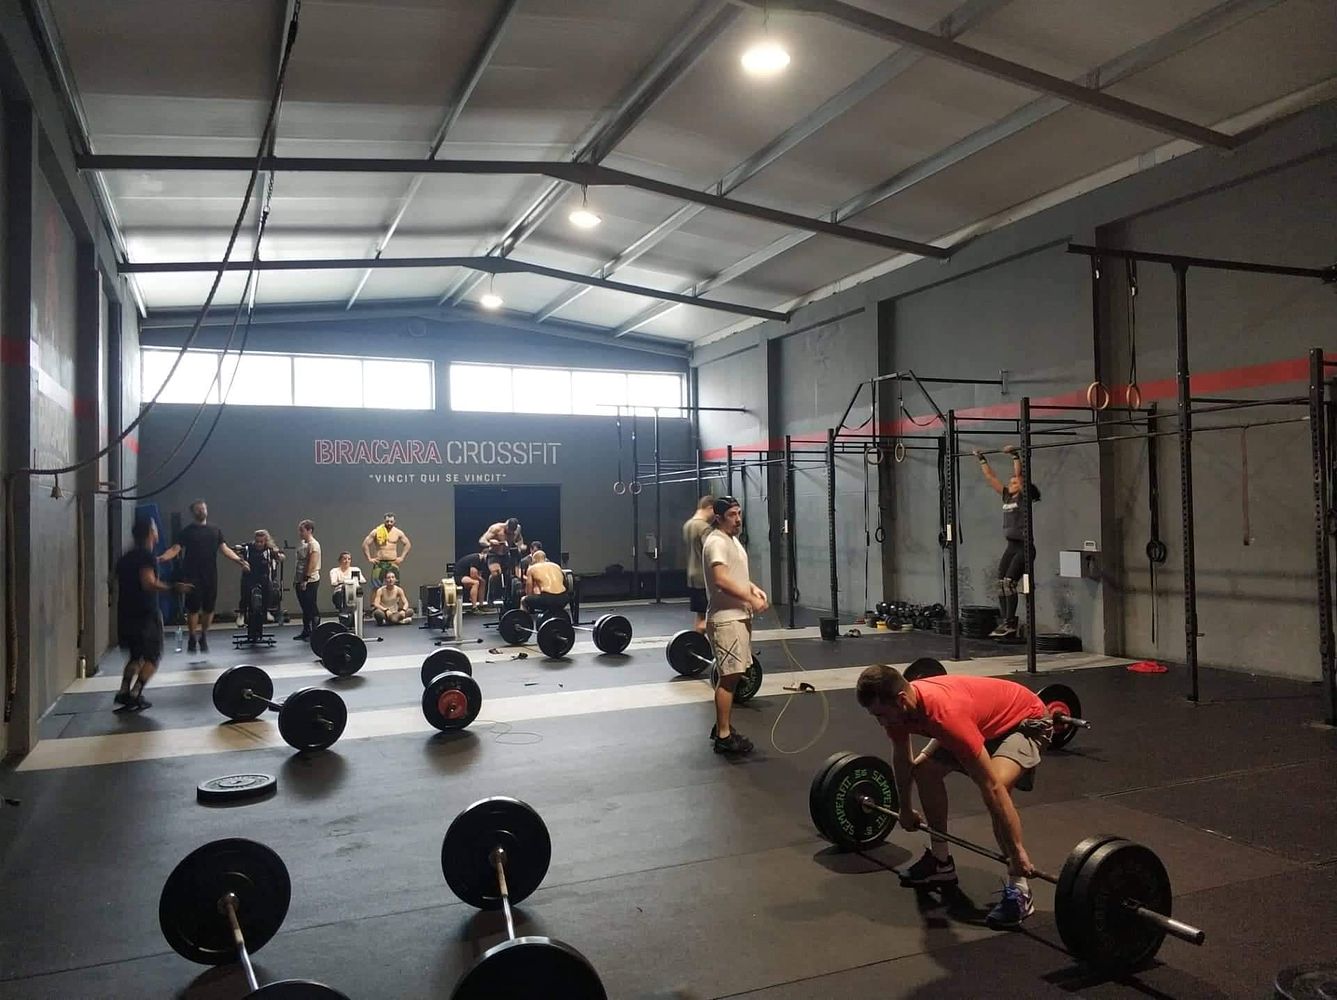 Bracara Crossfit gym in Braga, Portugal